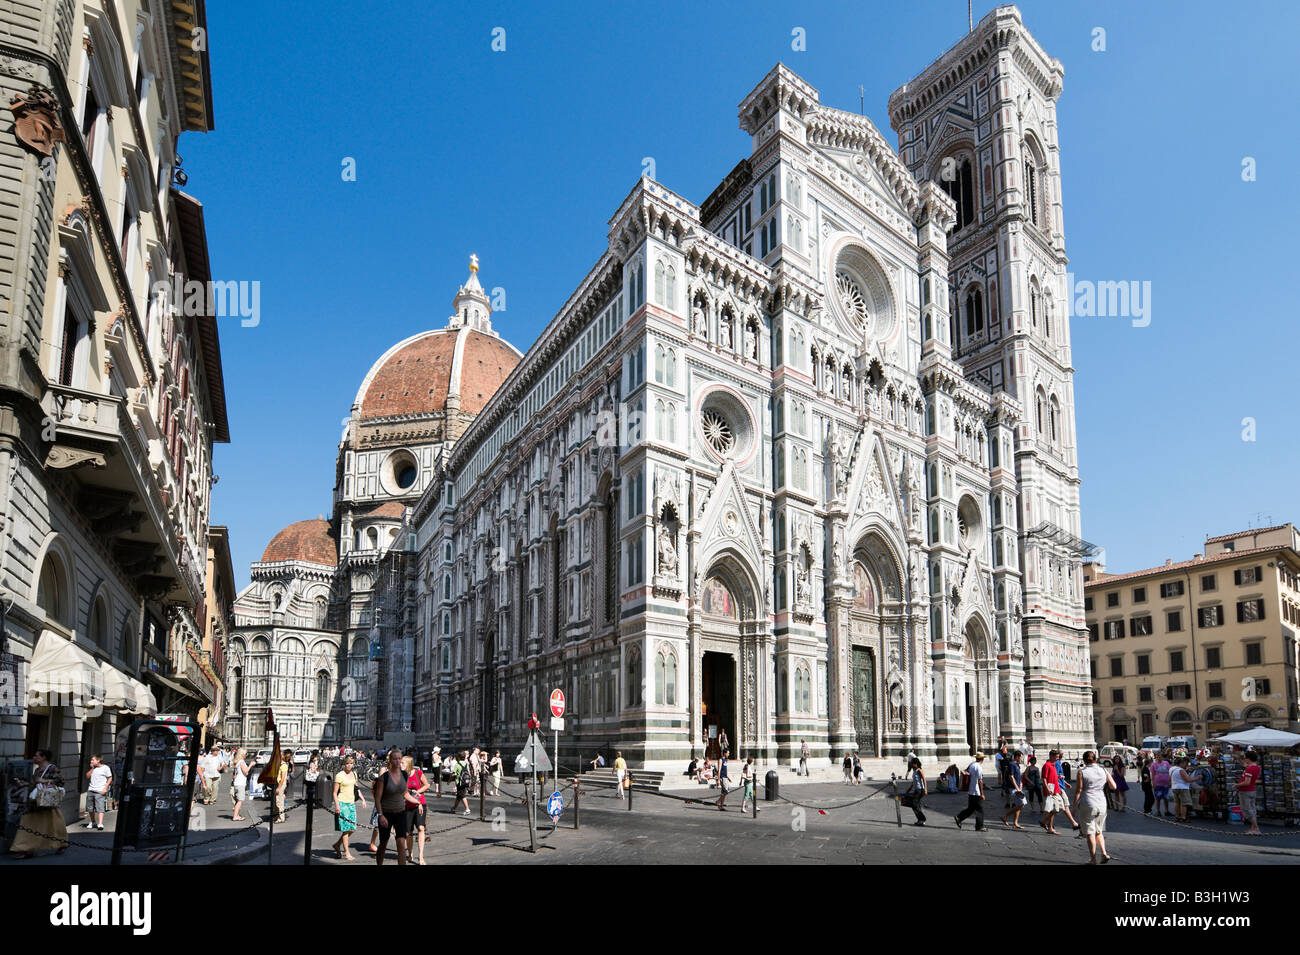 La Basílica di Santa Maria del Fiore (el Duomo) y el campanario de Giotto, la Plaza de San Giovanni, Florencia, Toscana, Italia Foto de stock